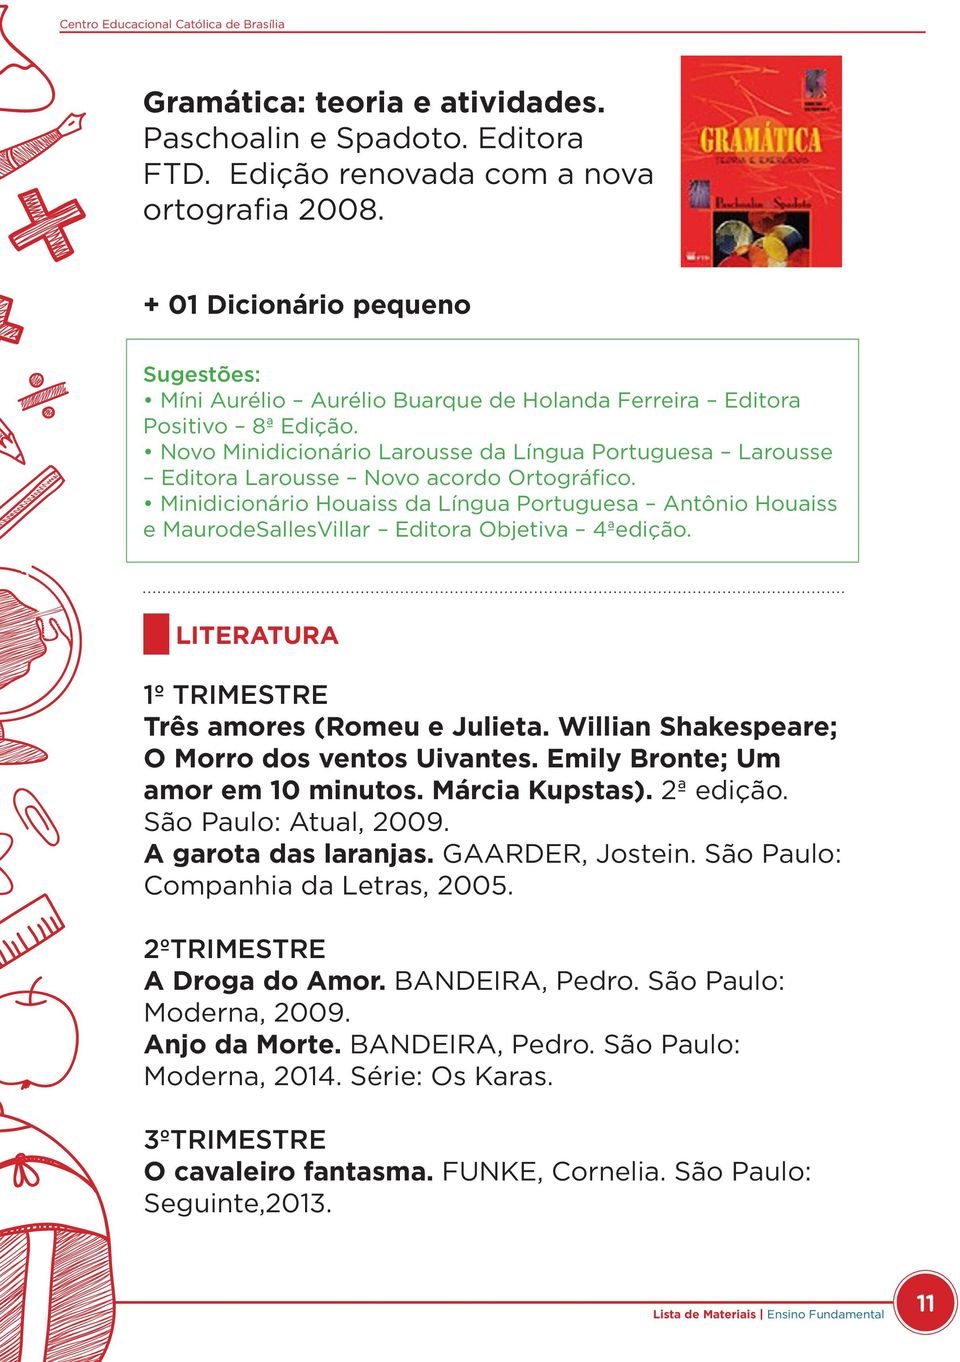 Novo Minidicionário Larousse da Língua Portuguesa Larousse Editora Larousse Novo acordo Ortográfico.